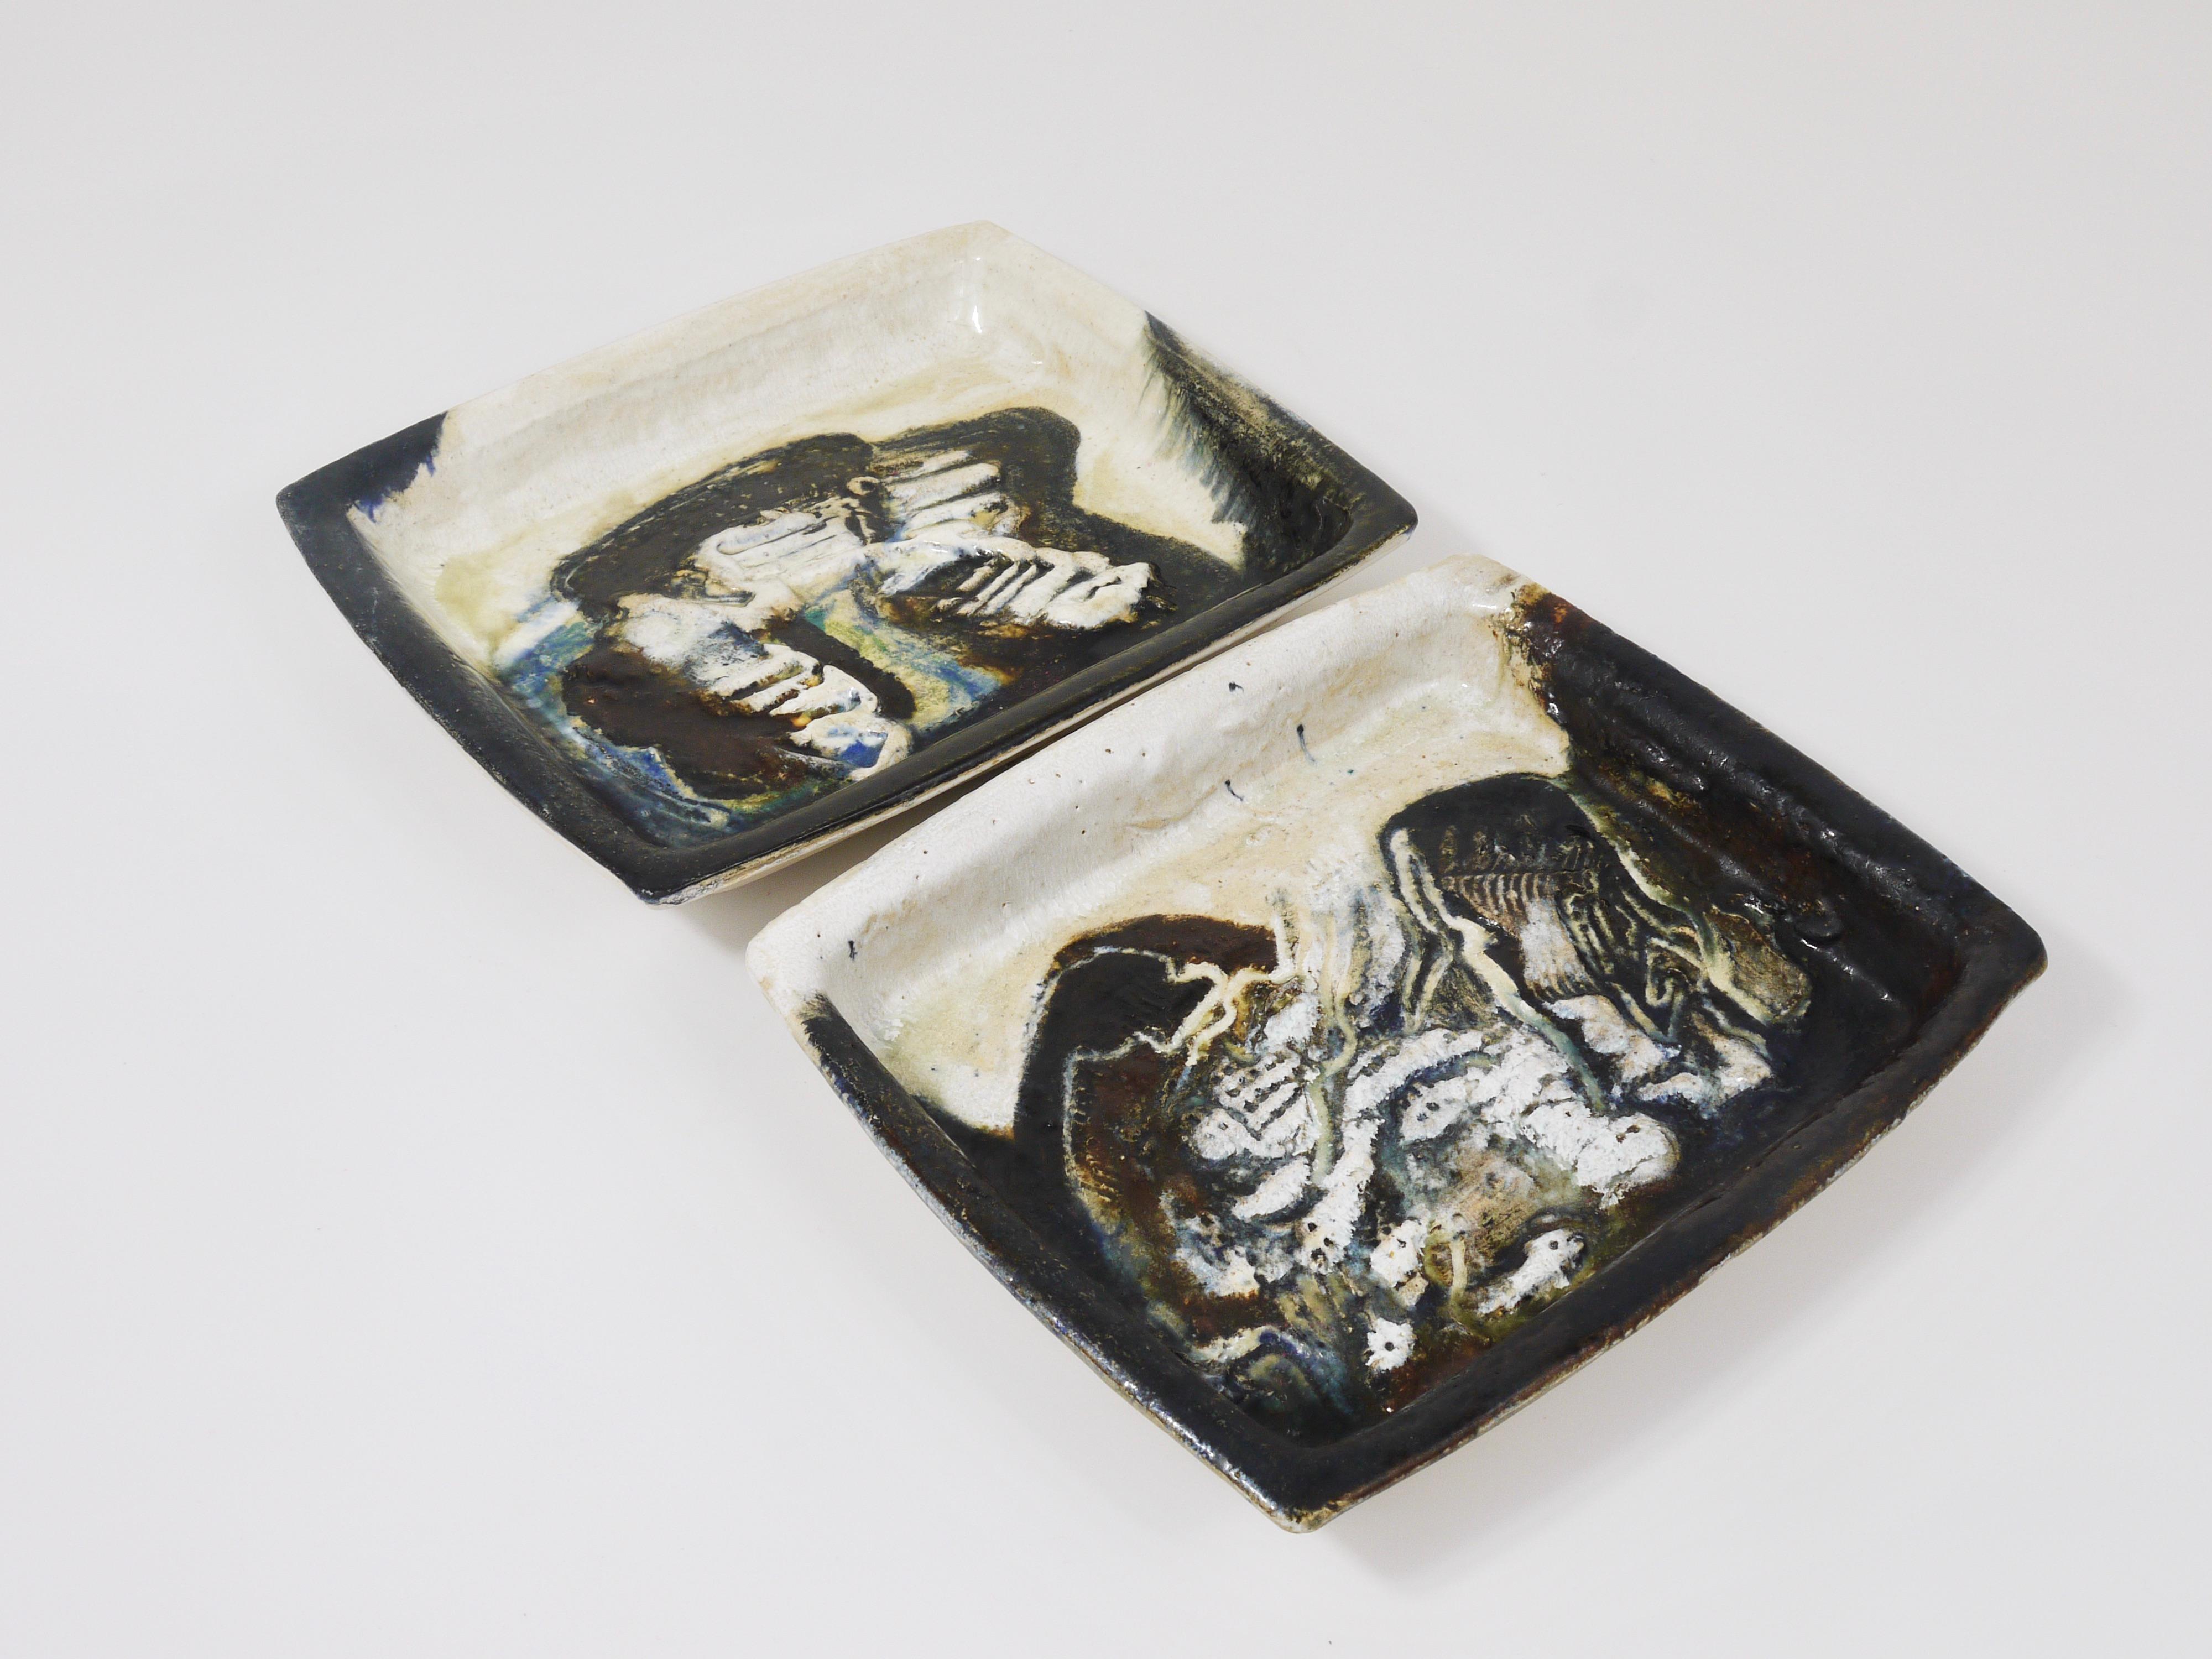 Ein Paar dekorative, große quadratische skandinavische Schalen / Teller mit wunderschönen abstrakten Motiven. Entworfen und hergestellt von 
dem dänischen Keramikkünstler Jeppe Hagedorn-Olsen in den 1970er Jahren. Beide Schalen wurden aus Keramik